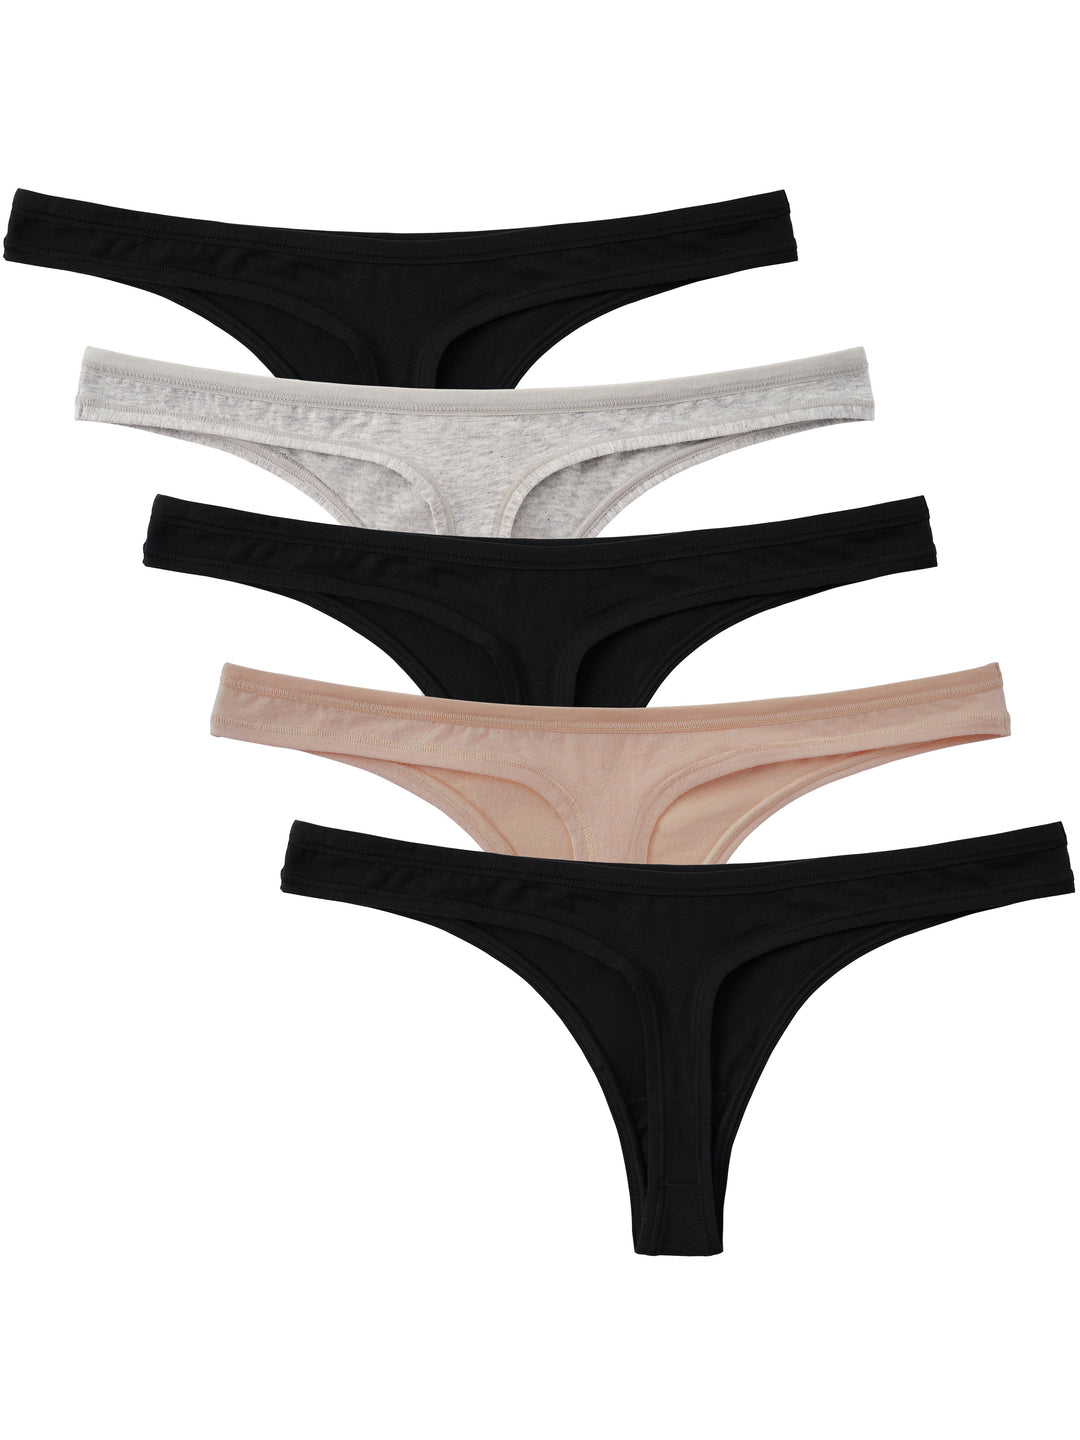 Women's Panties - Kmart